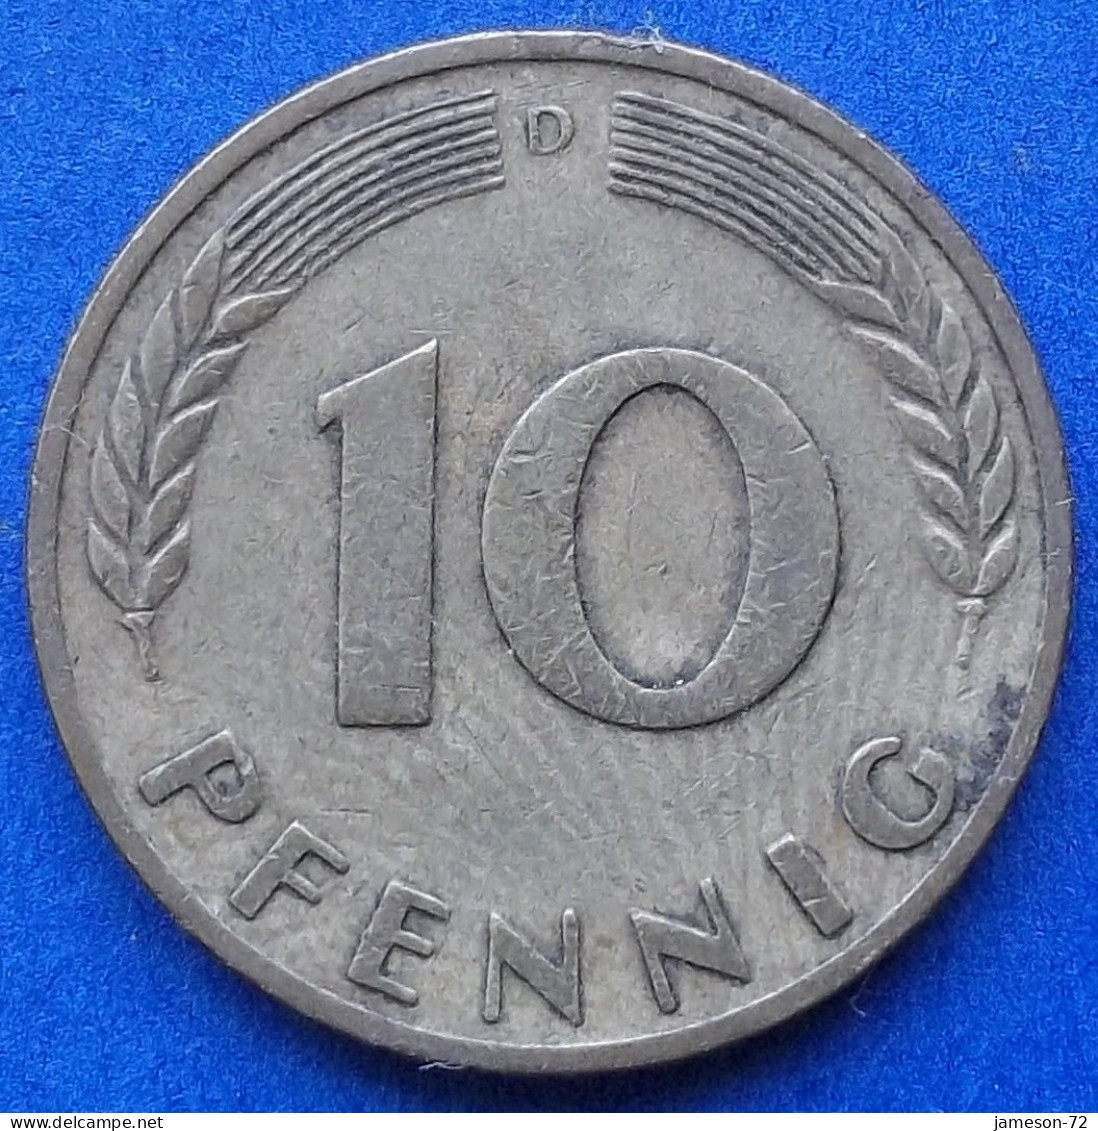 GERMANY - 10 Pfennig 1950 D KM# 108 Federal Republic Mark Coinage (1946-2002) - Edelweiss Coins - 10 Pfennig